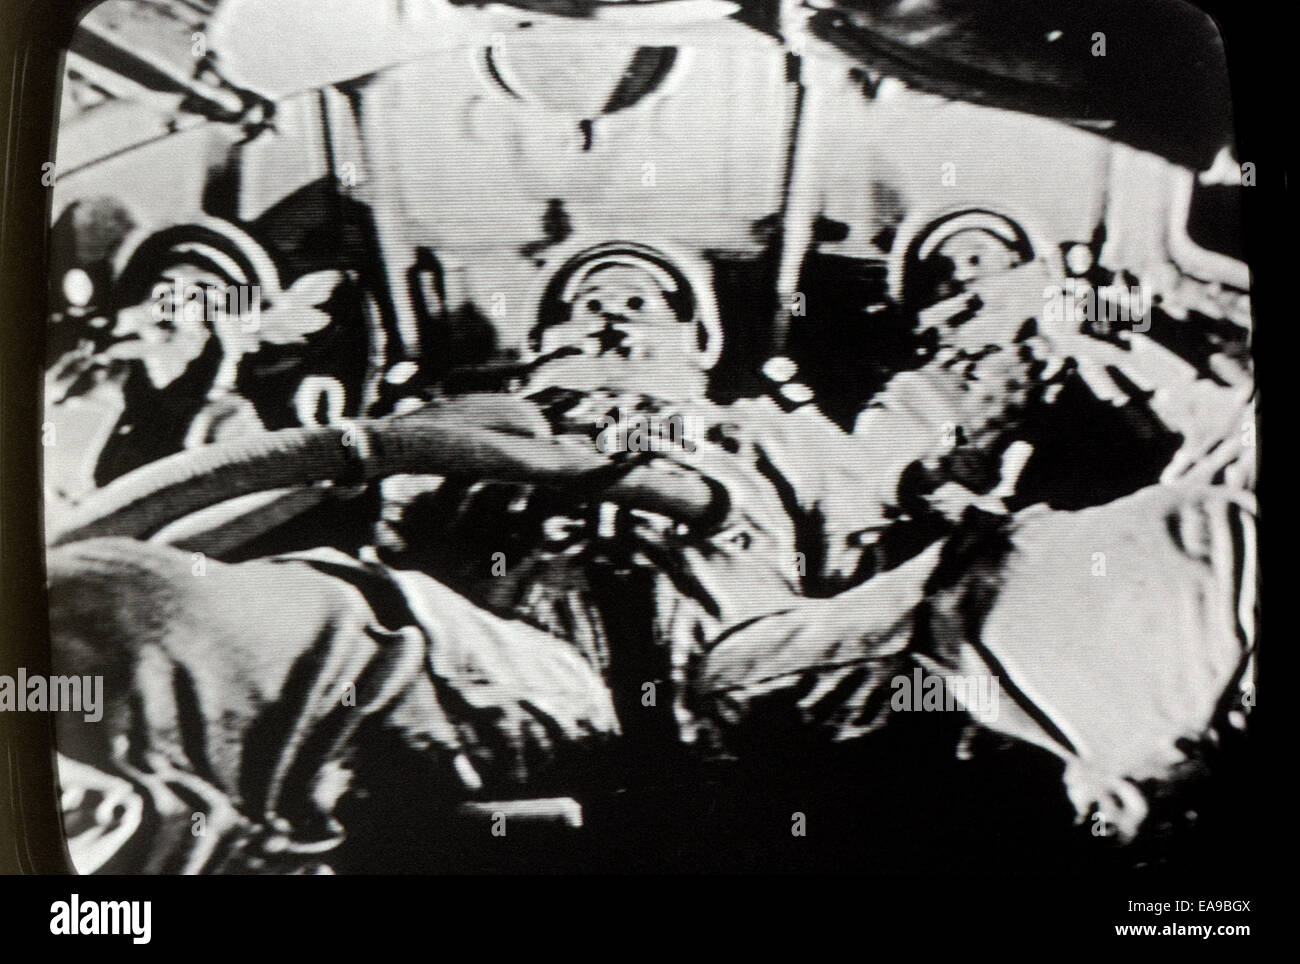 Moon landing 20 juillet 1969, les astronautes photographié en temps réel sur l'écran de télévision à Los Angeles, Californie. KATHY DEWITT Banque D'Images